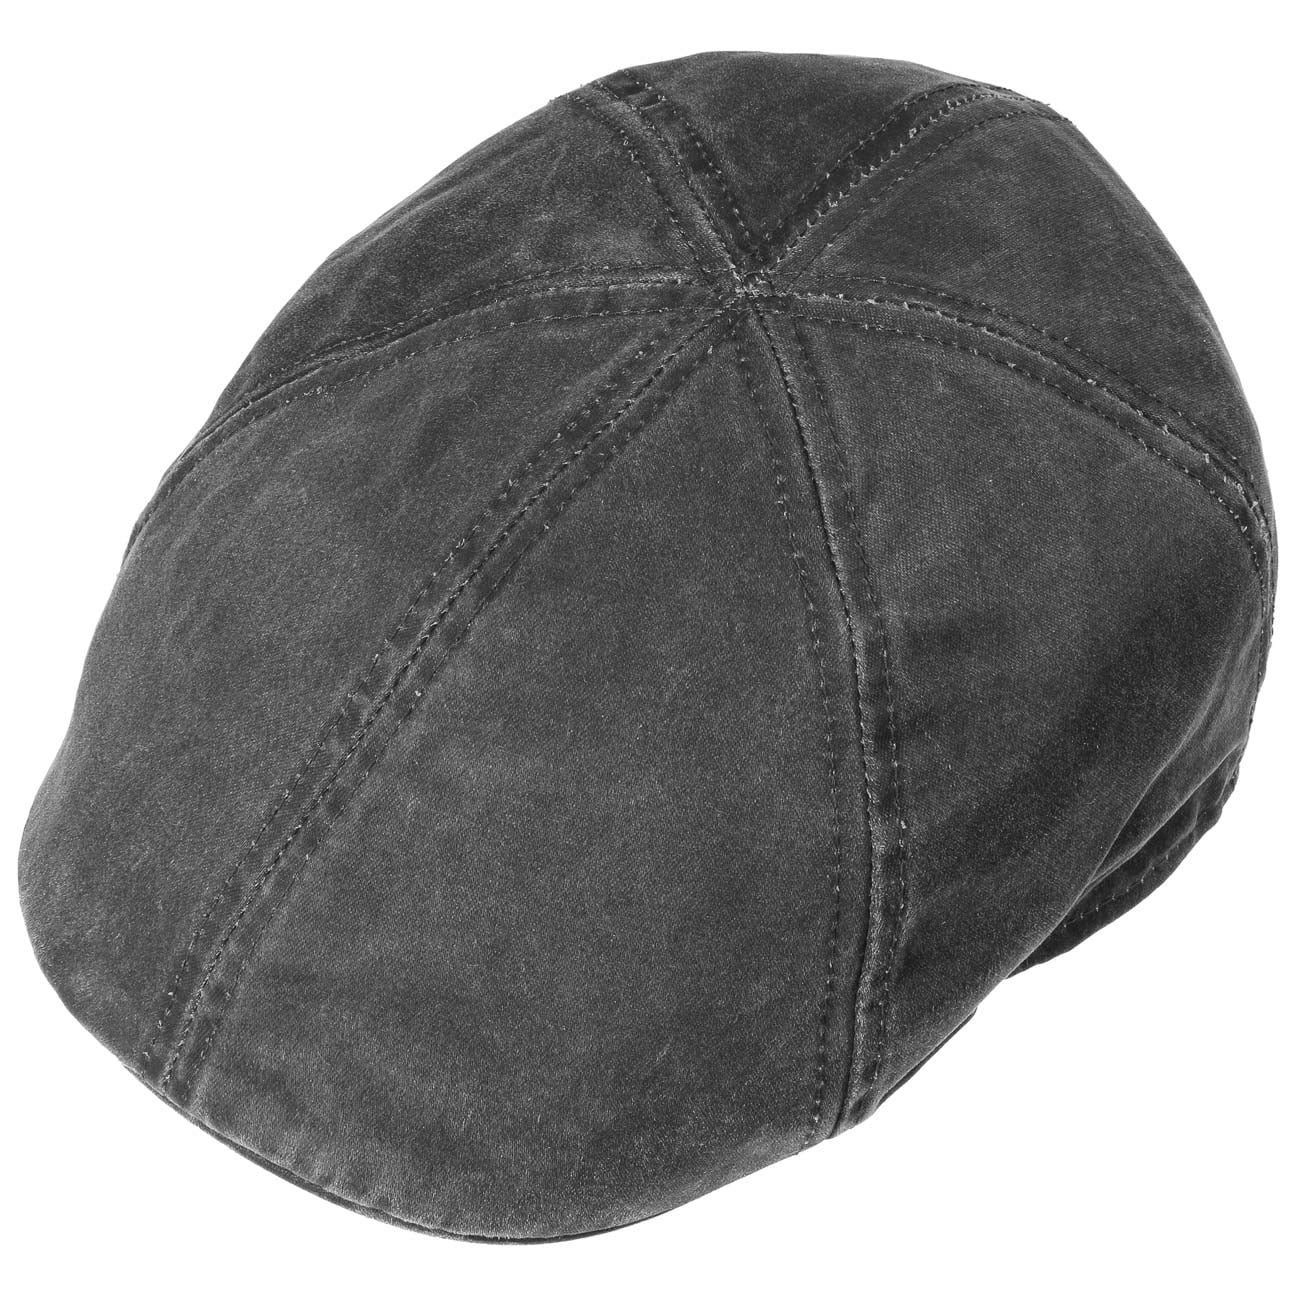 Cap schwarz mit (1-St) Schirm Flat Baumwollcap Stetson